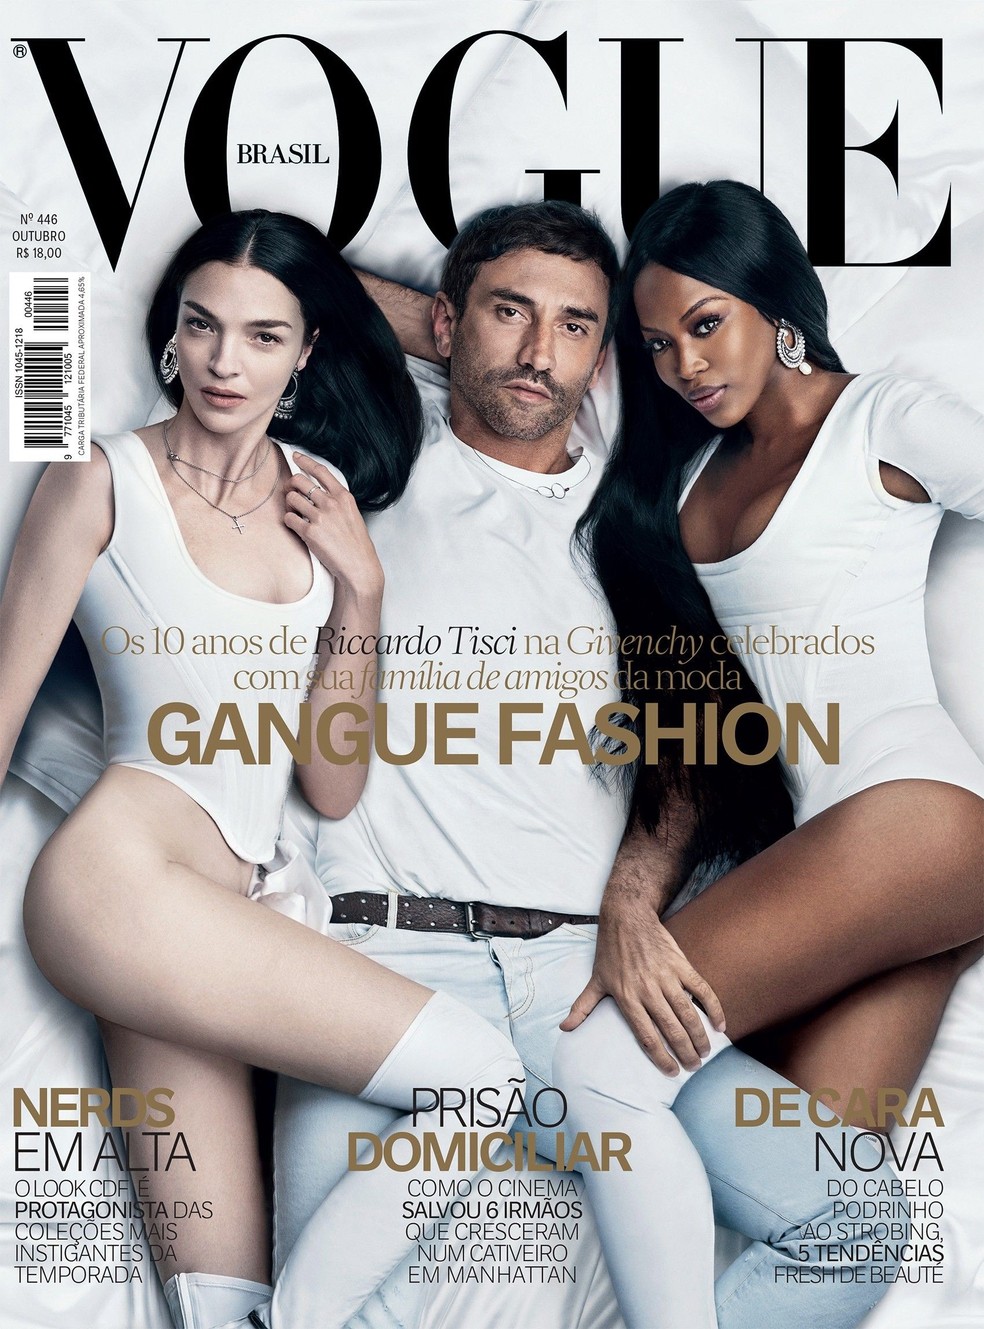 Mariacarla Boscono, Riccardo Tisci e Naomi Campbell na capa da Vogue Brasil de outubro de 2015. (Foto: Luigi e Iango) — Foto: Vogue